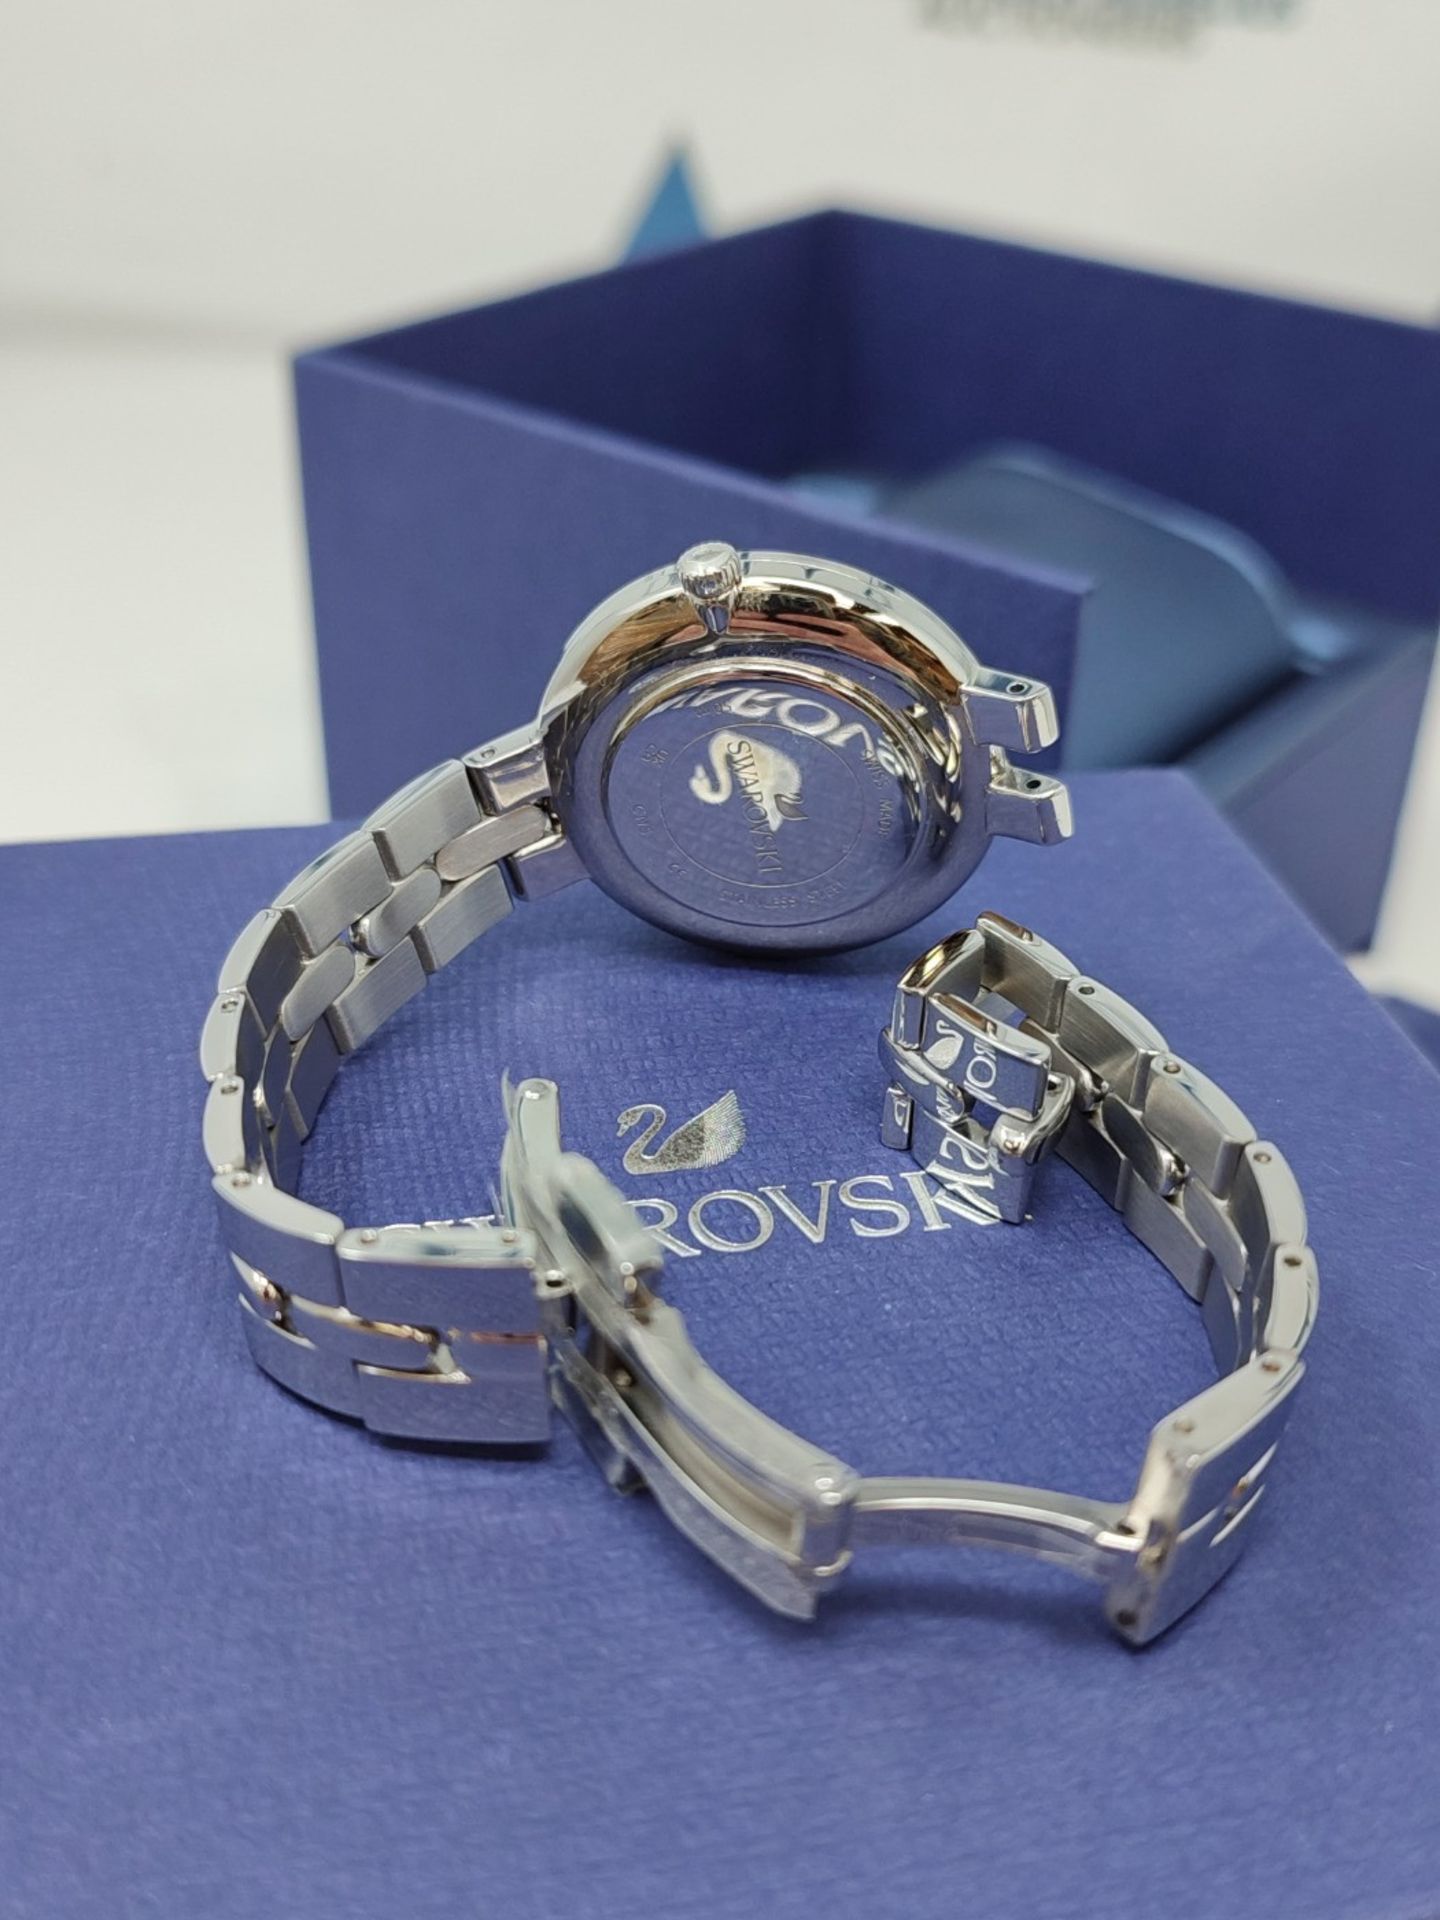 RRP £158.00 Swarovski Cosmopolitan watch, metal bracelet, silver-colored, stainless steel - Image 3 of 6